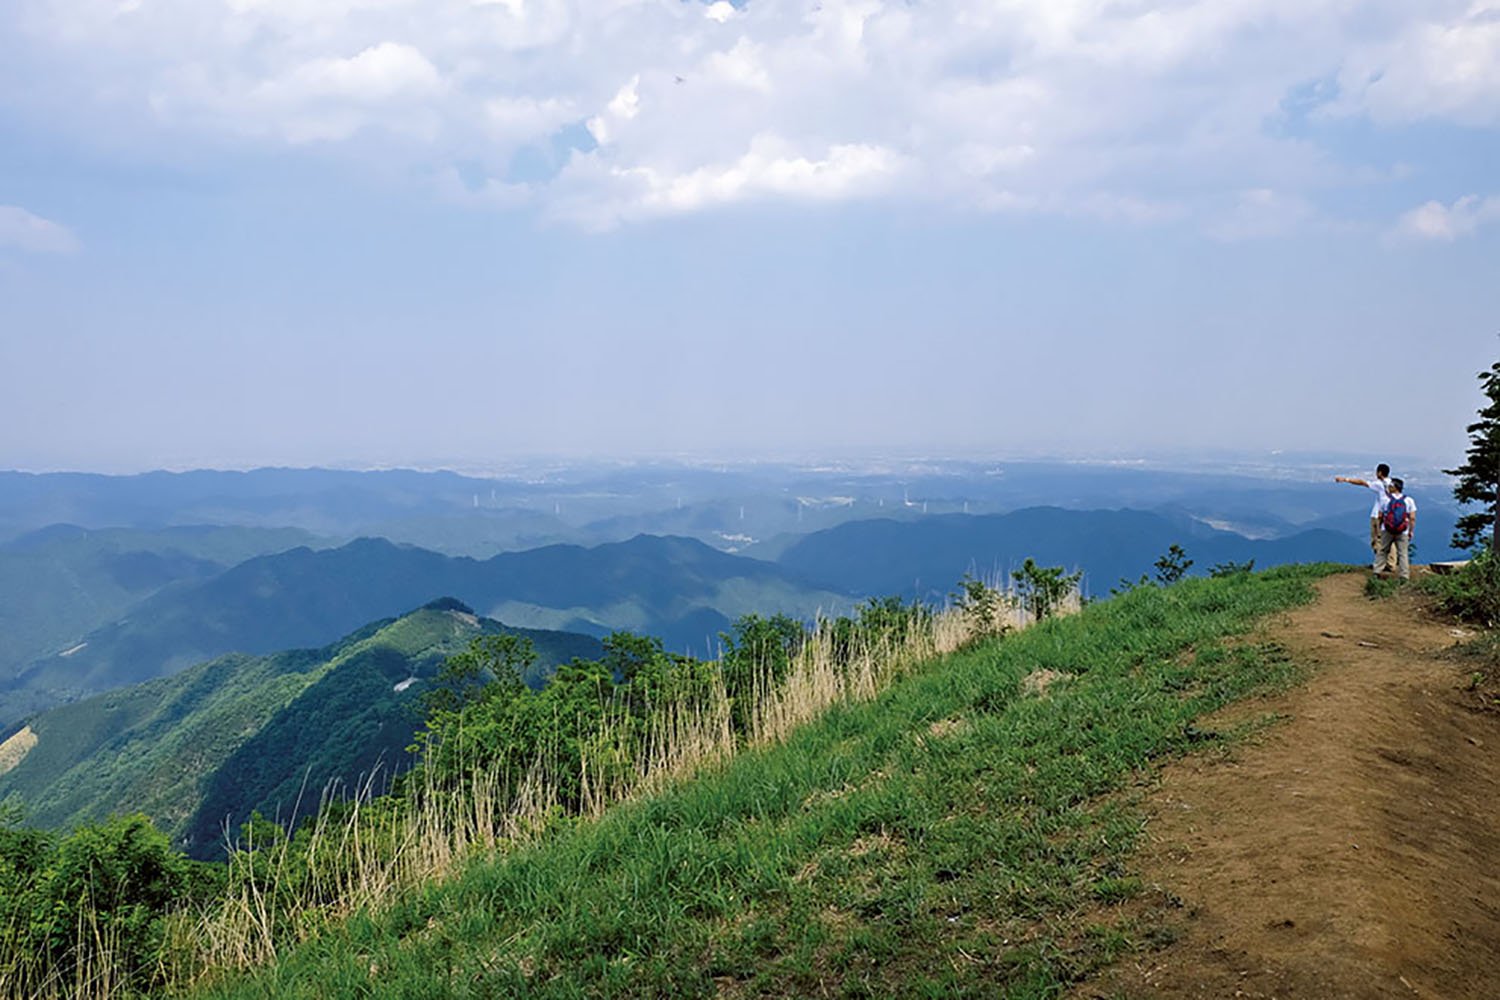 棒の折山山頂。正面に飯能の市街、奥武蔵の峰々の展望がいい。棒ノ嶺、棒ノ峰とも呼ばれる。